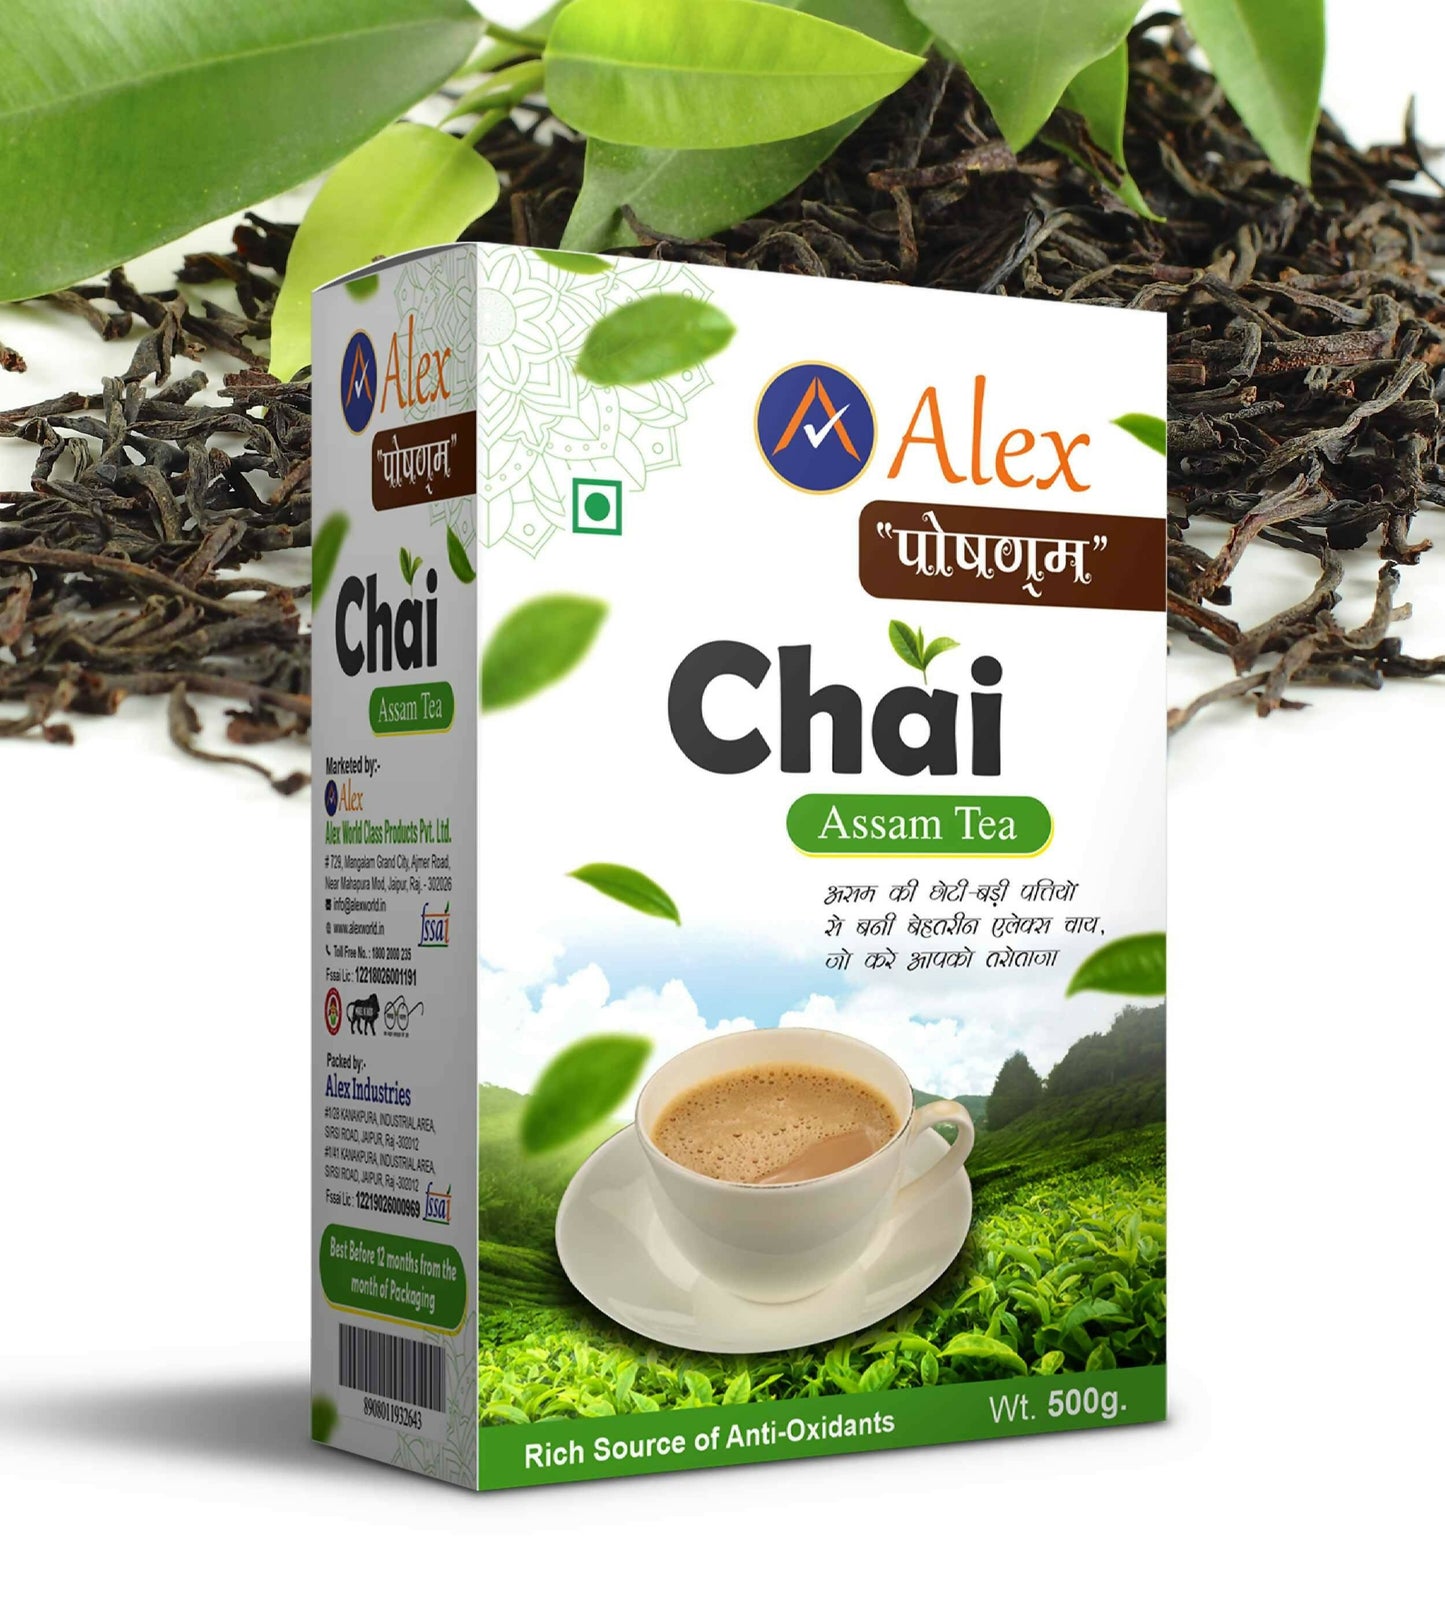 Alex Chai - Assam Tea